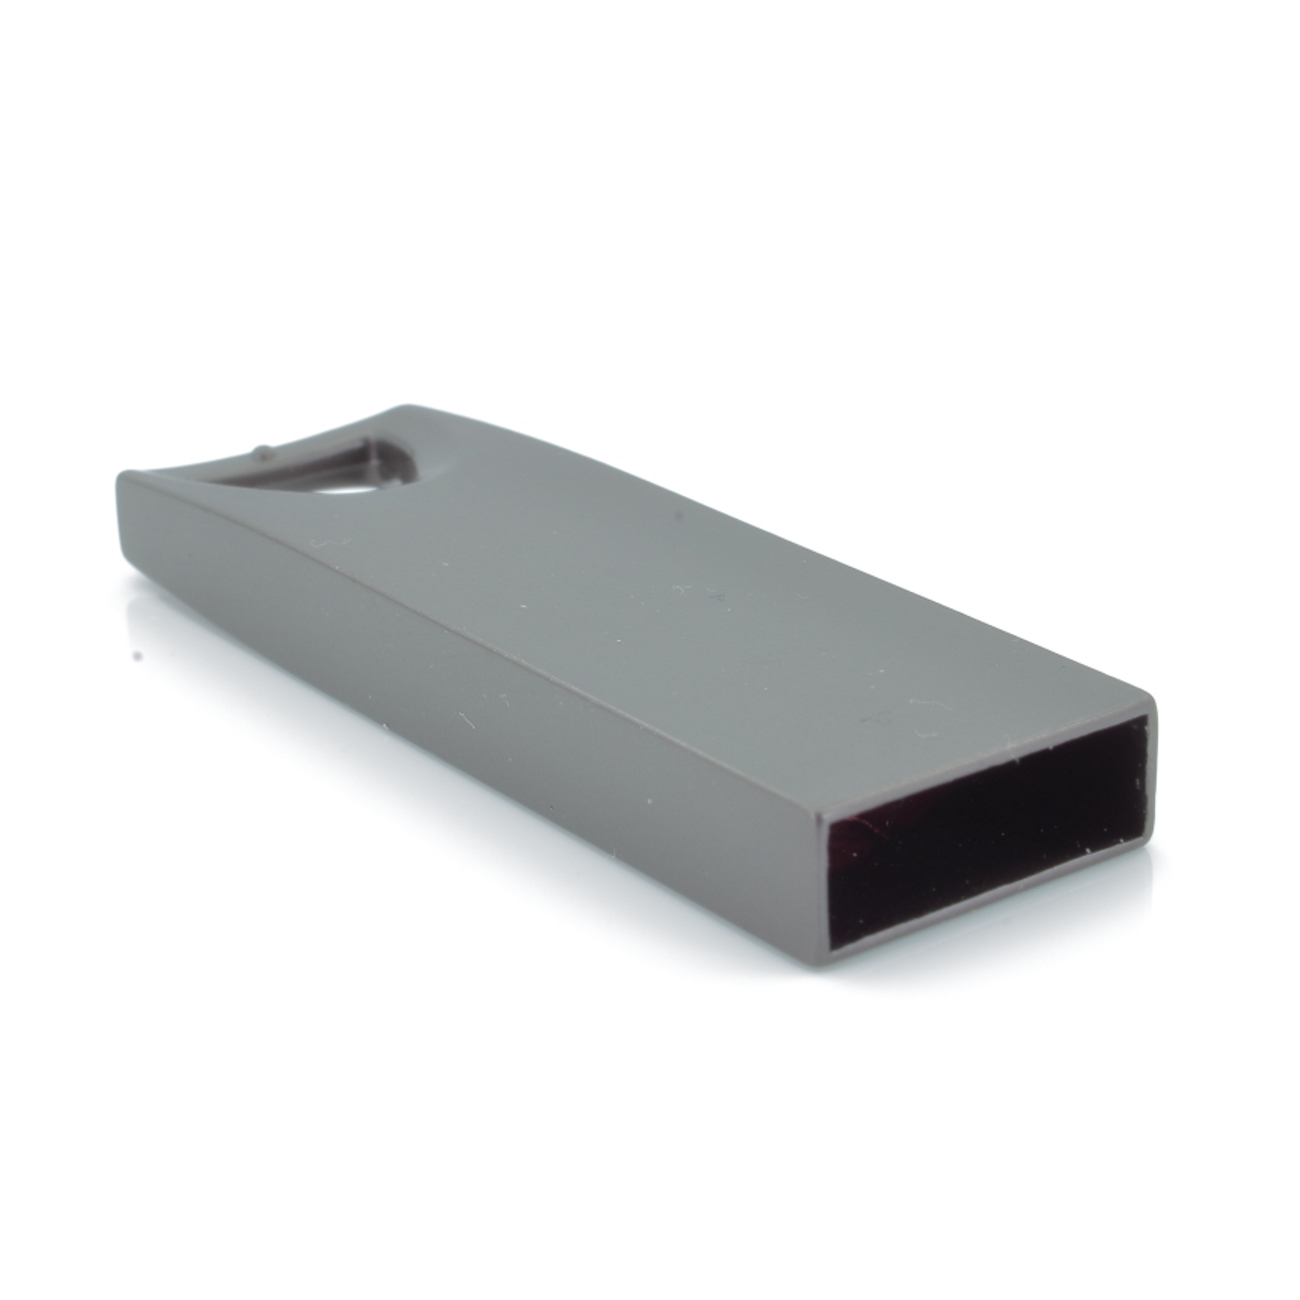 4 GB) SE13 (Graumetalic, GERMANY USB-Stick ®Metall USB